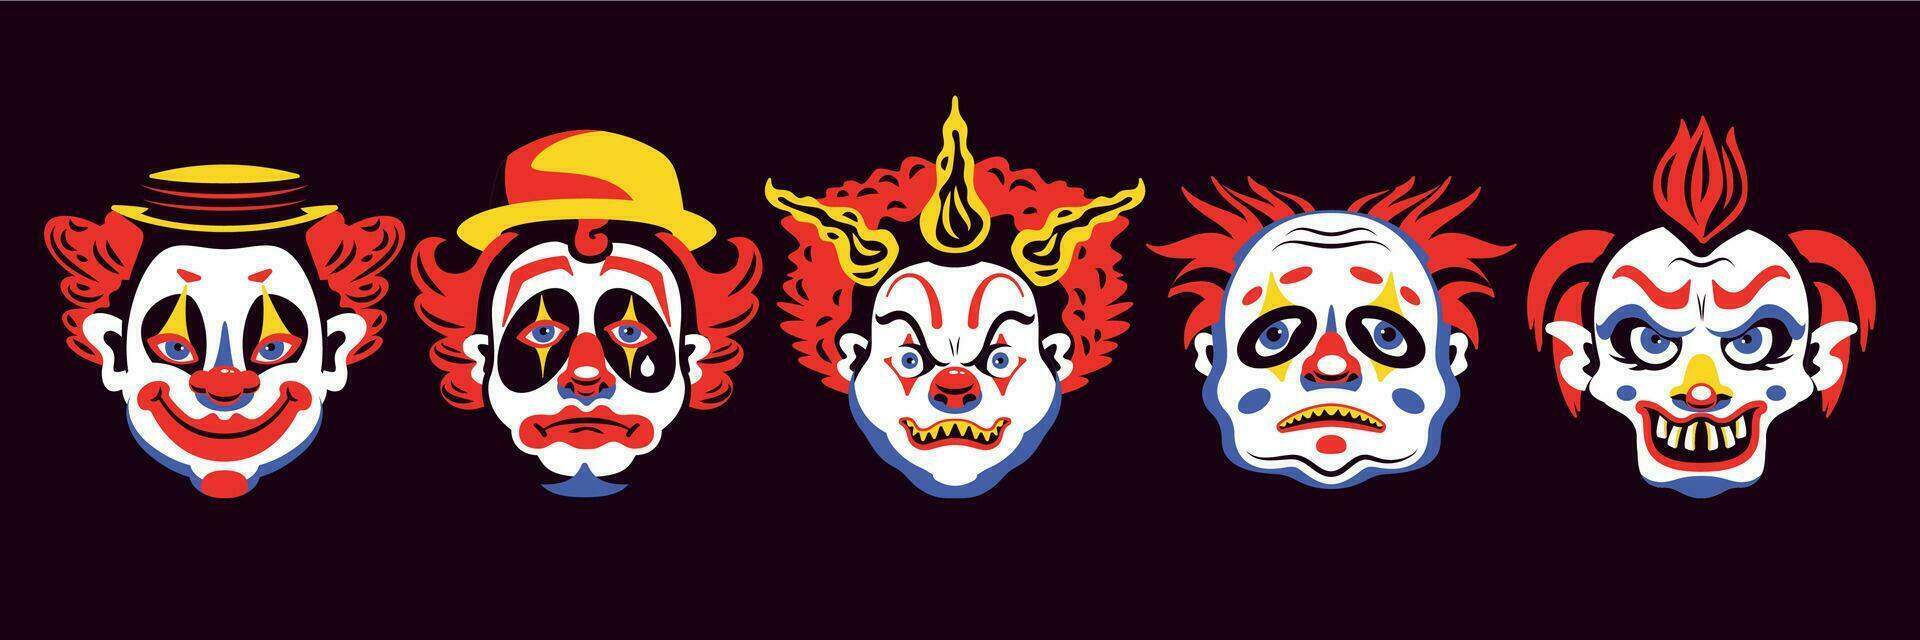 unheimlich Clown Gesichter einstellen vektor